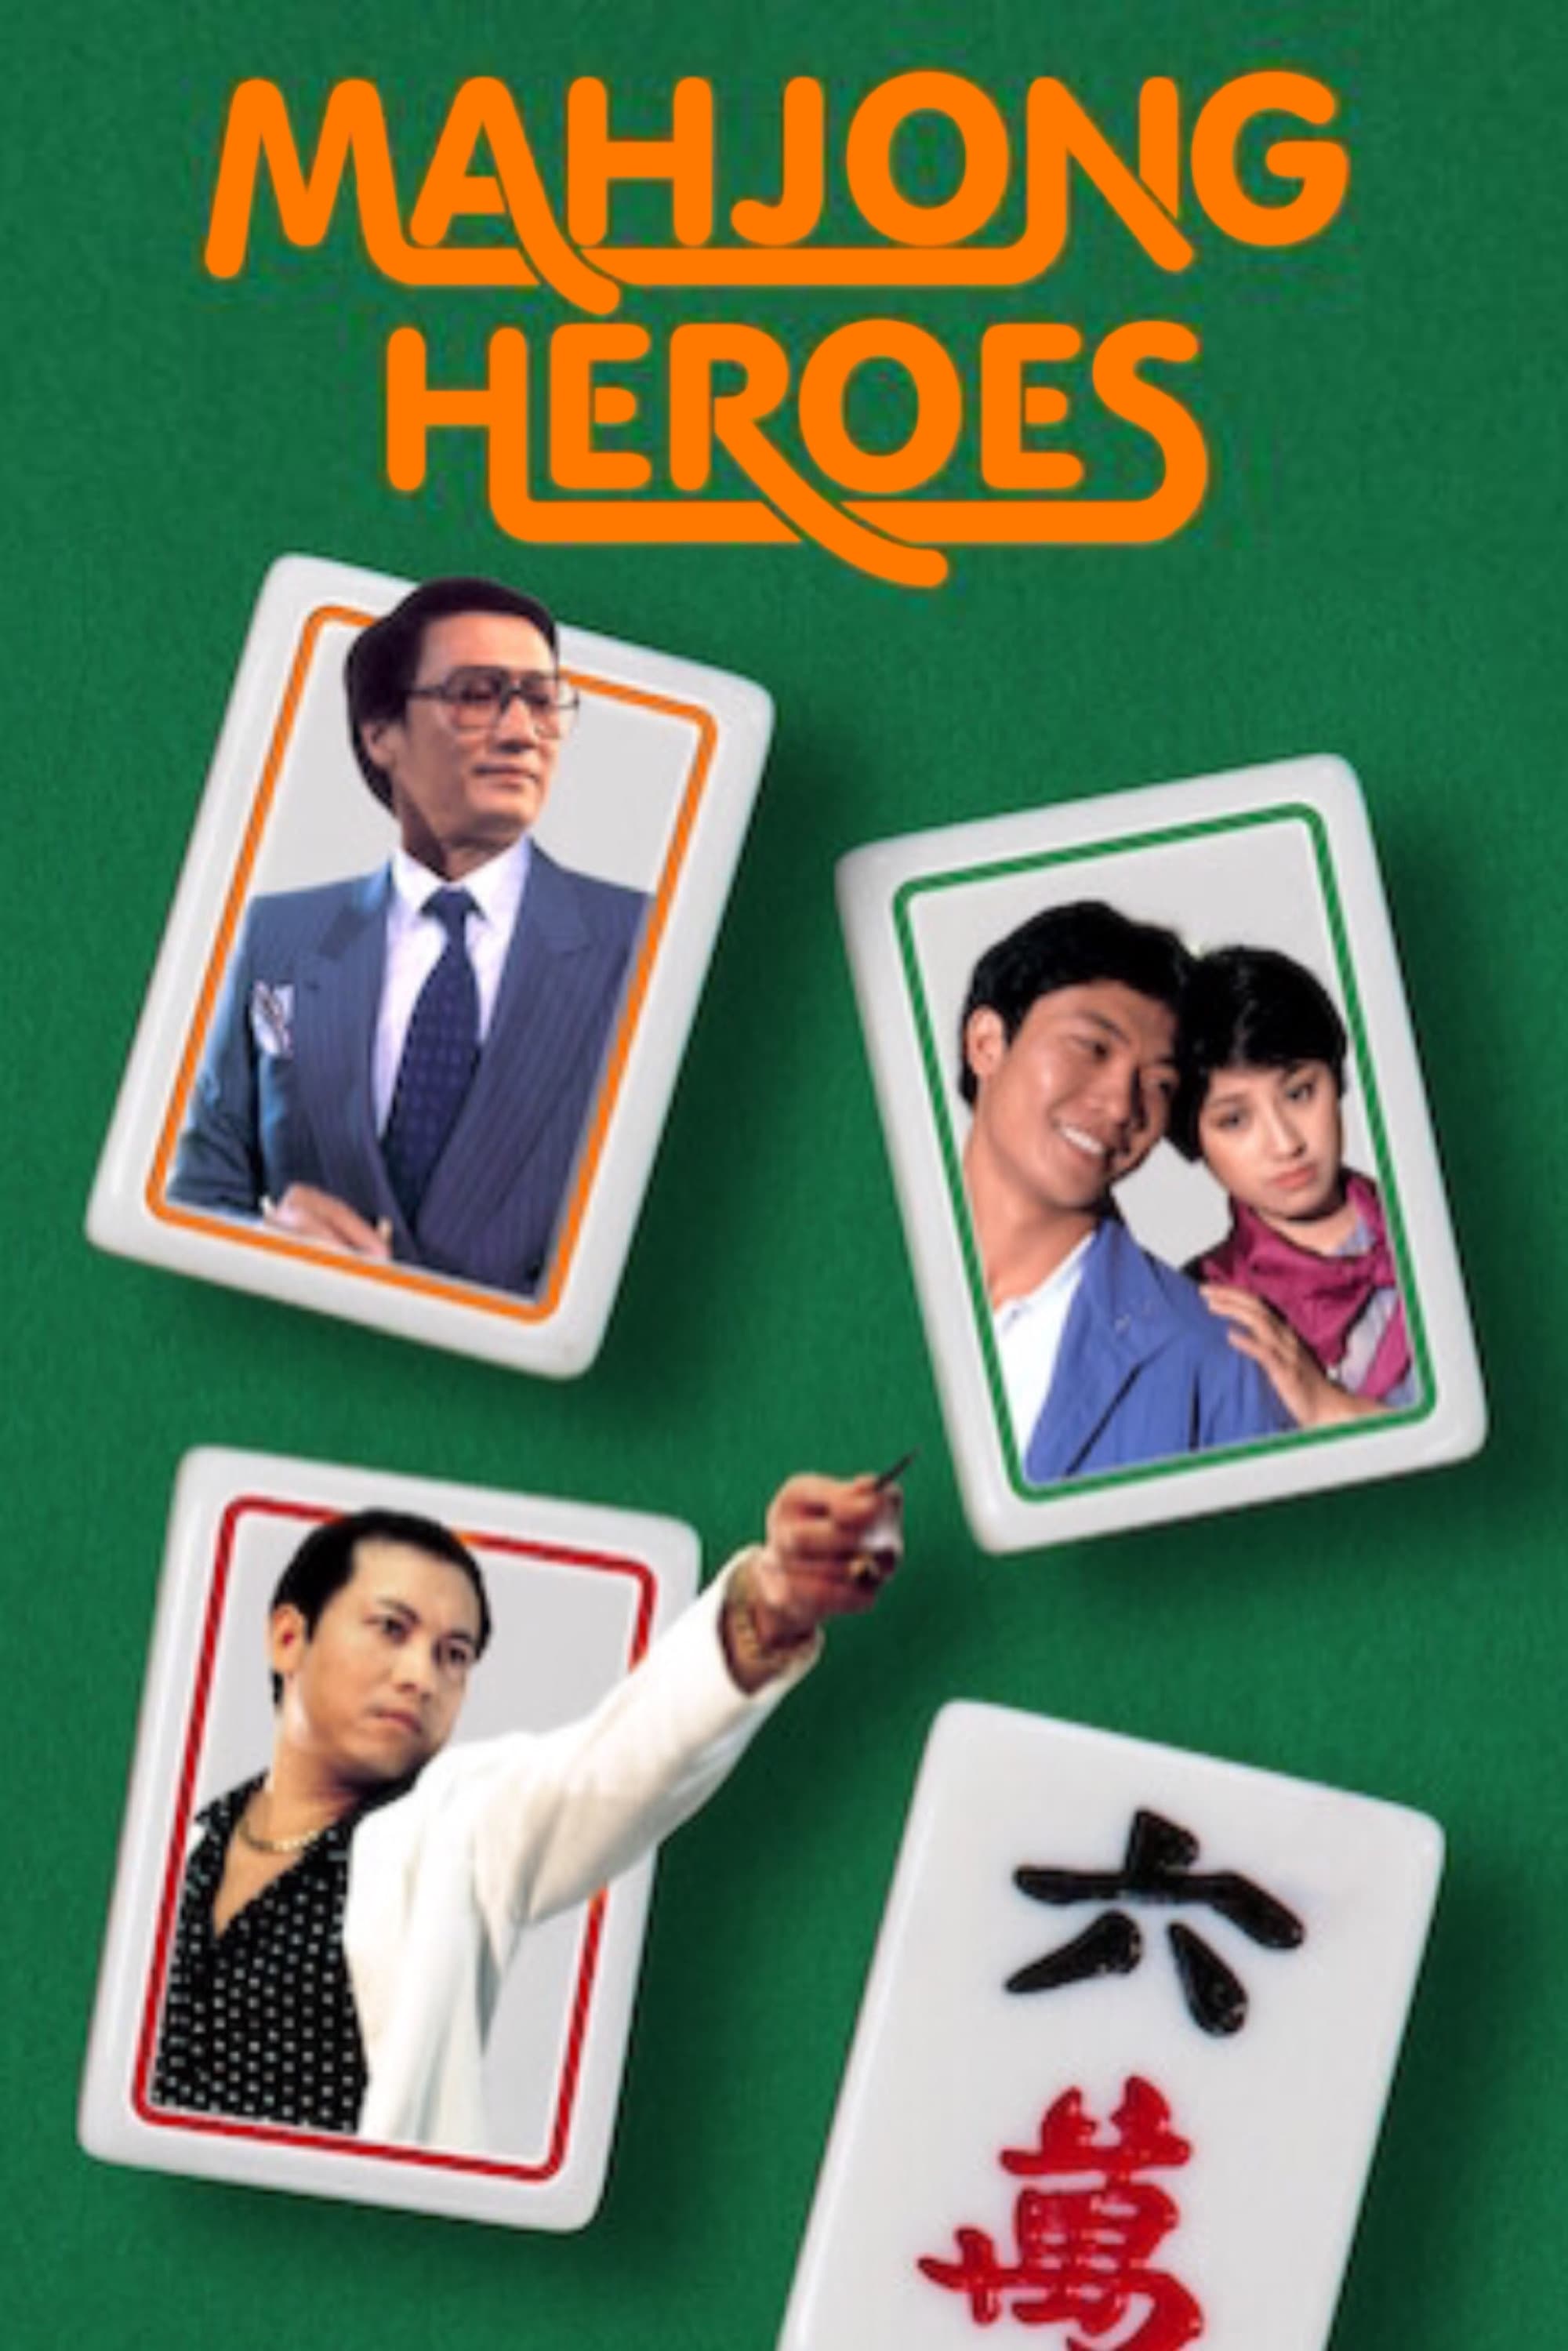 Mahjong Heroes